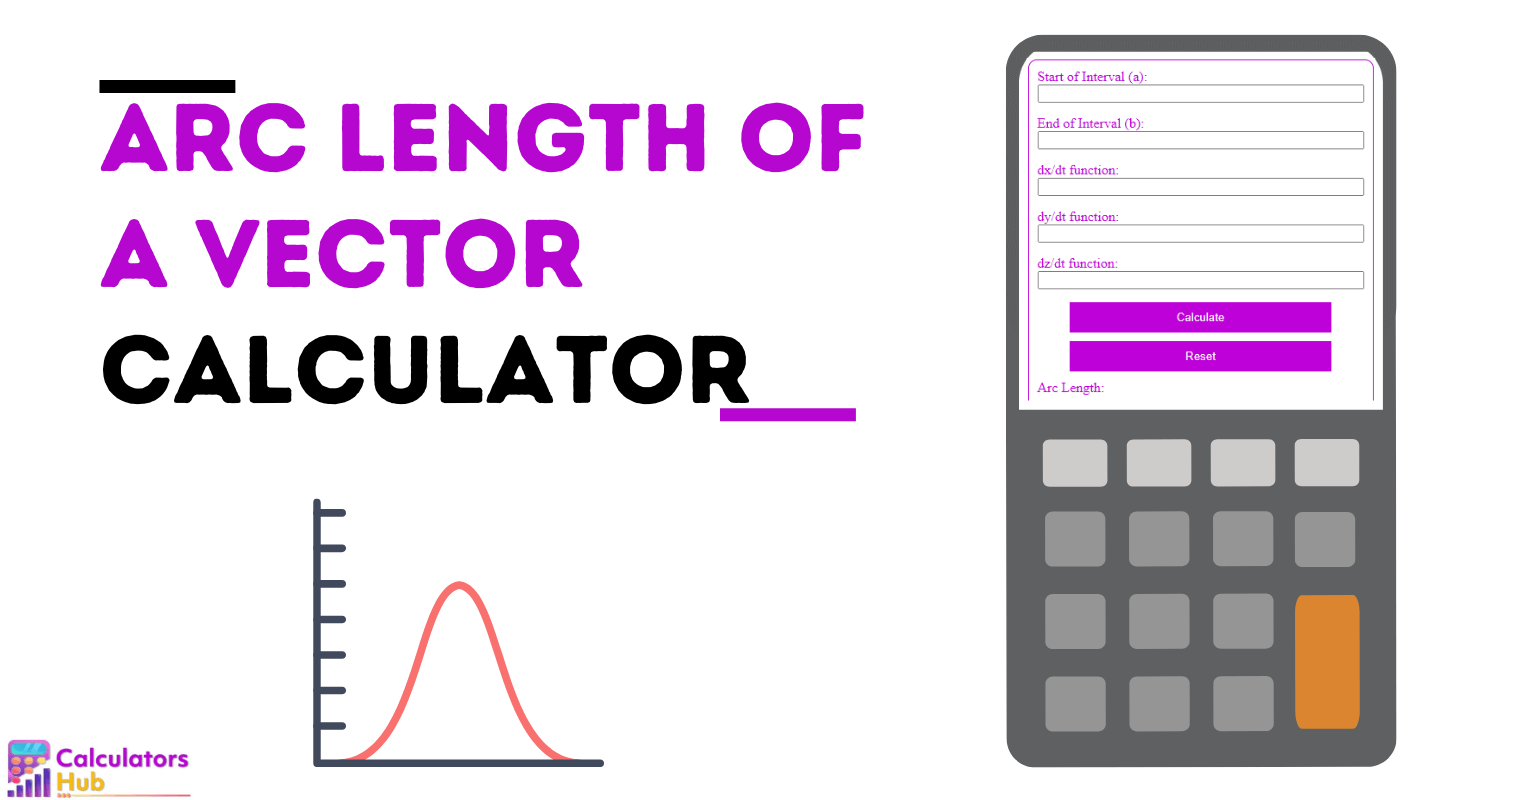 Arc Length of a Vector Calculator